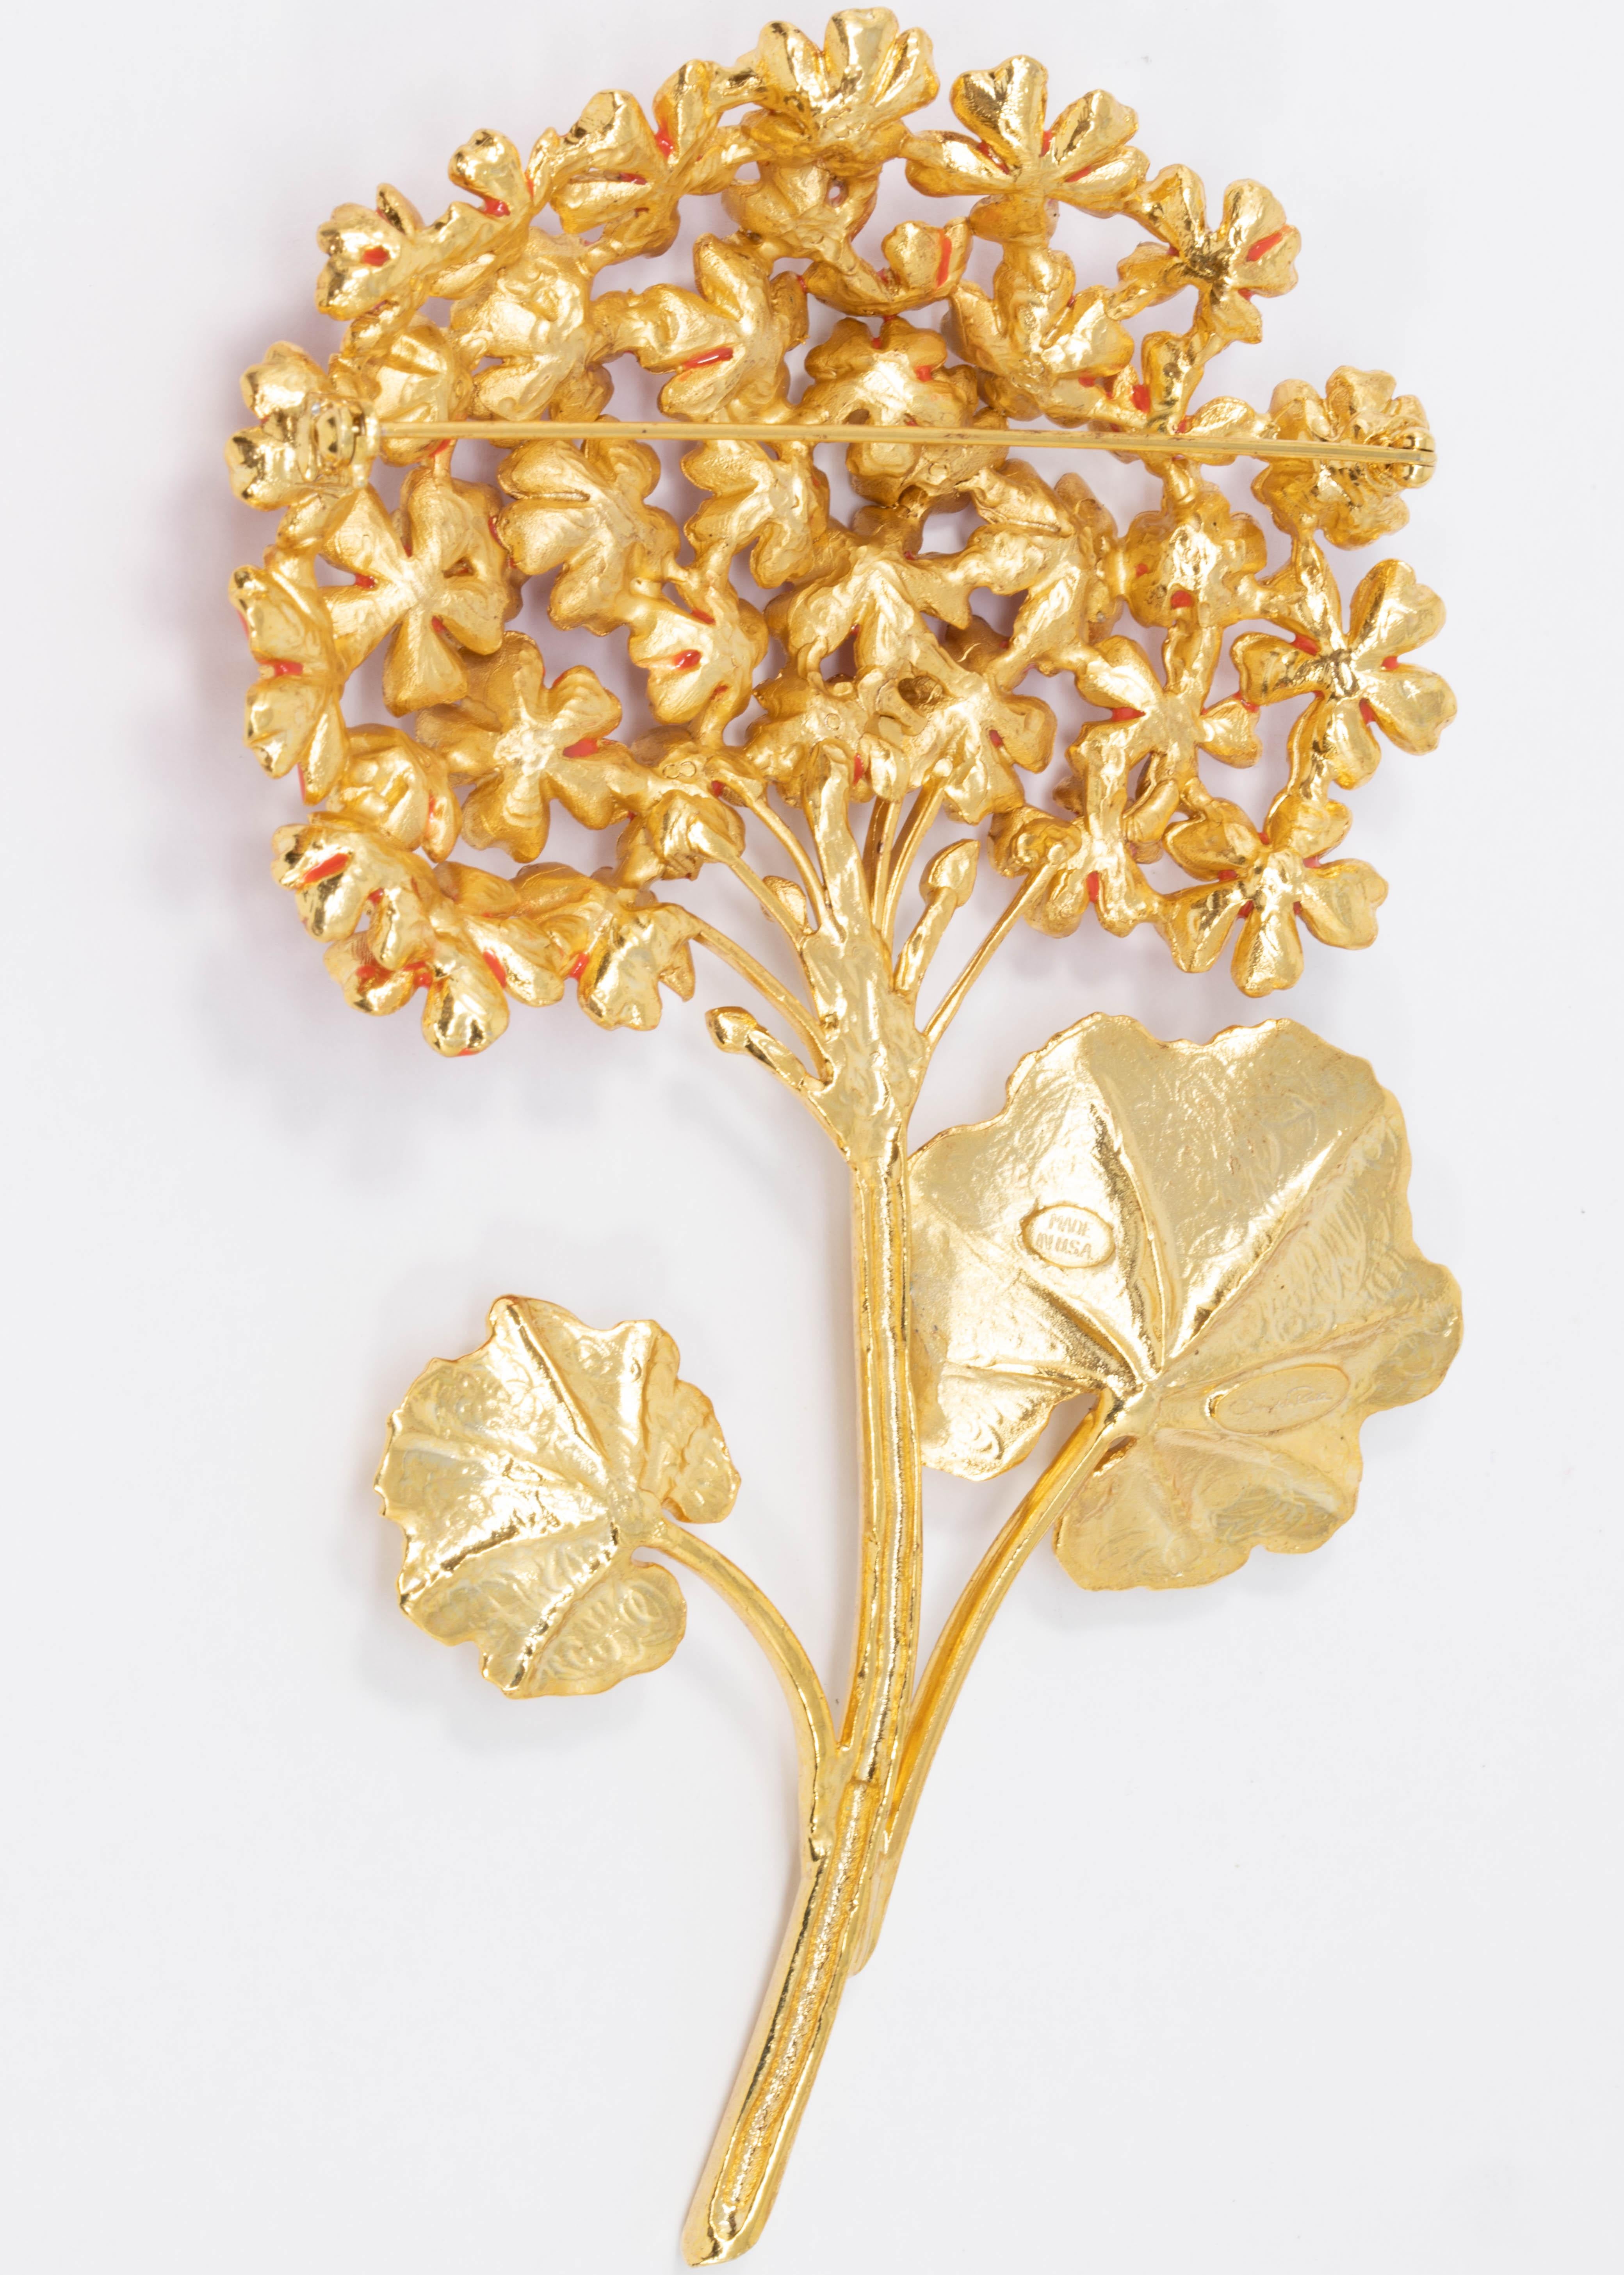 Ein herrlicher Blumenstrauß! Diese Oscar de la Renta Ansteckbrosche zeigt Geranienblüten auf einem goldenen Stiel. 

22KT vergoldet. Handbemaltes Cayenne-Orange-Email. 

Tags:: Marken:: Stempel: Oscar de la Renta:: Hergestellt in den USA